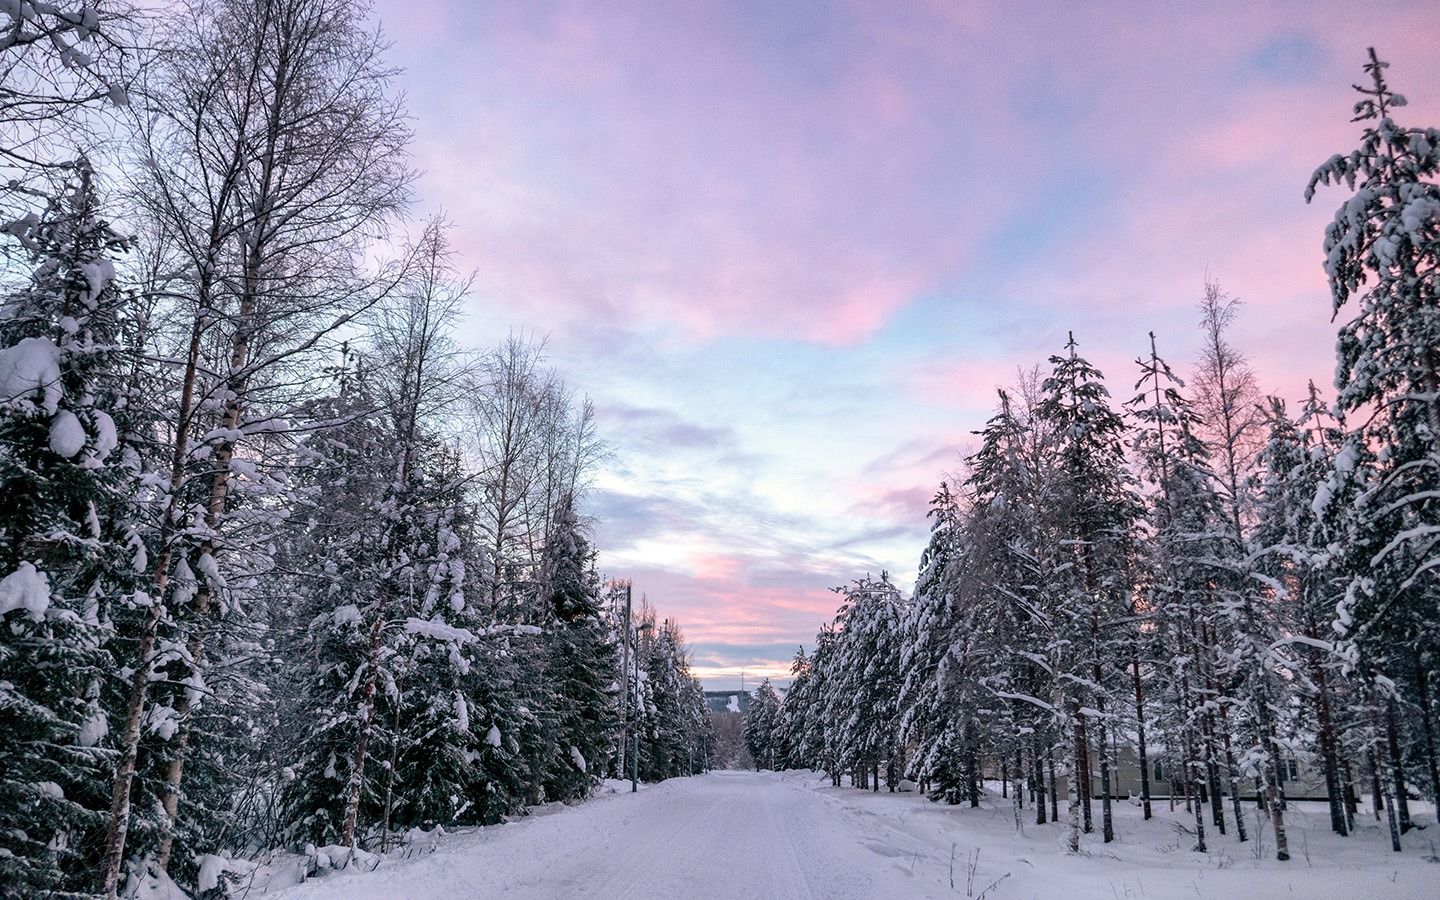 A winter wonderland trip to Rovaniemi, Finnish Lapland